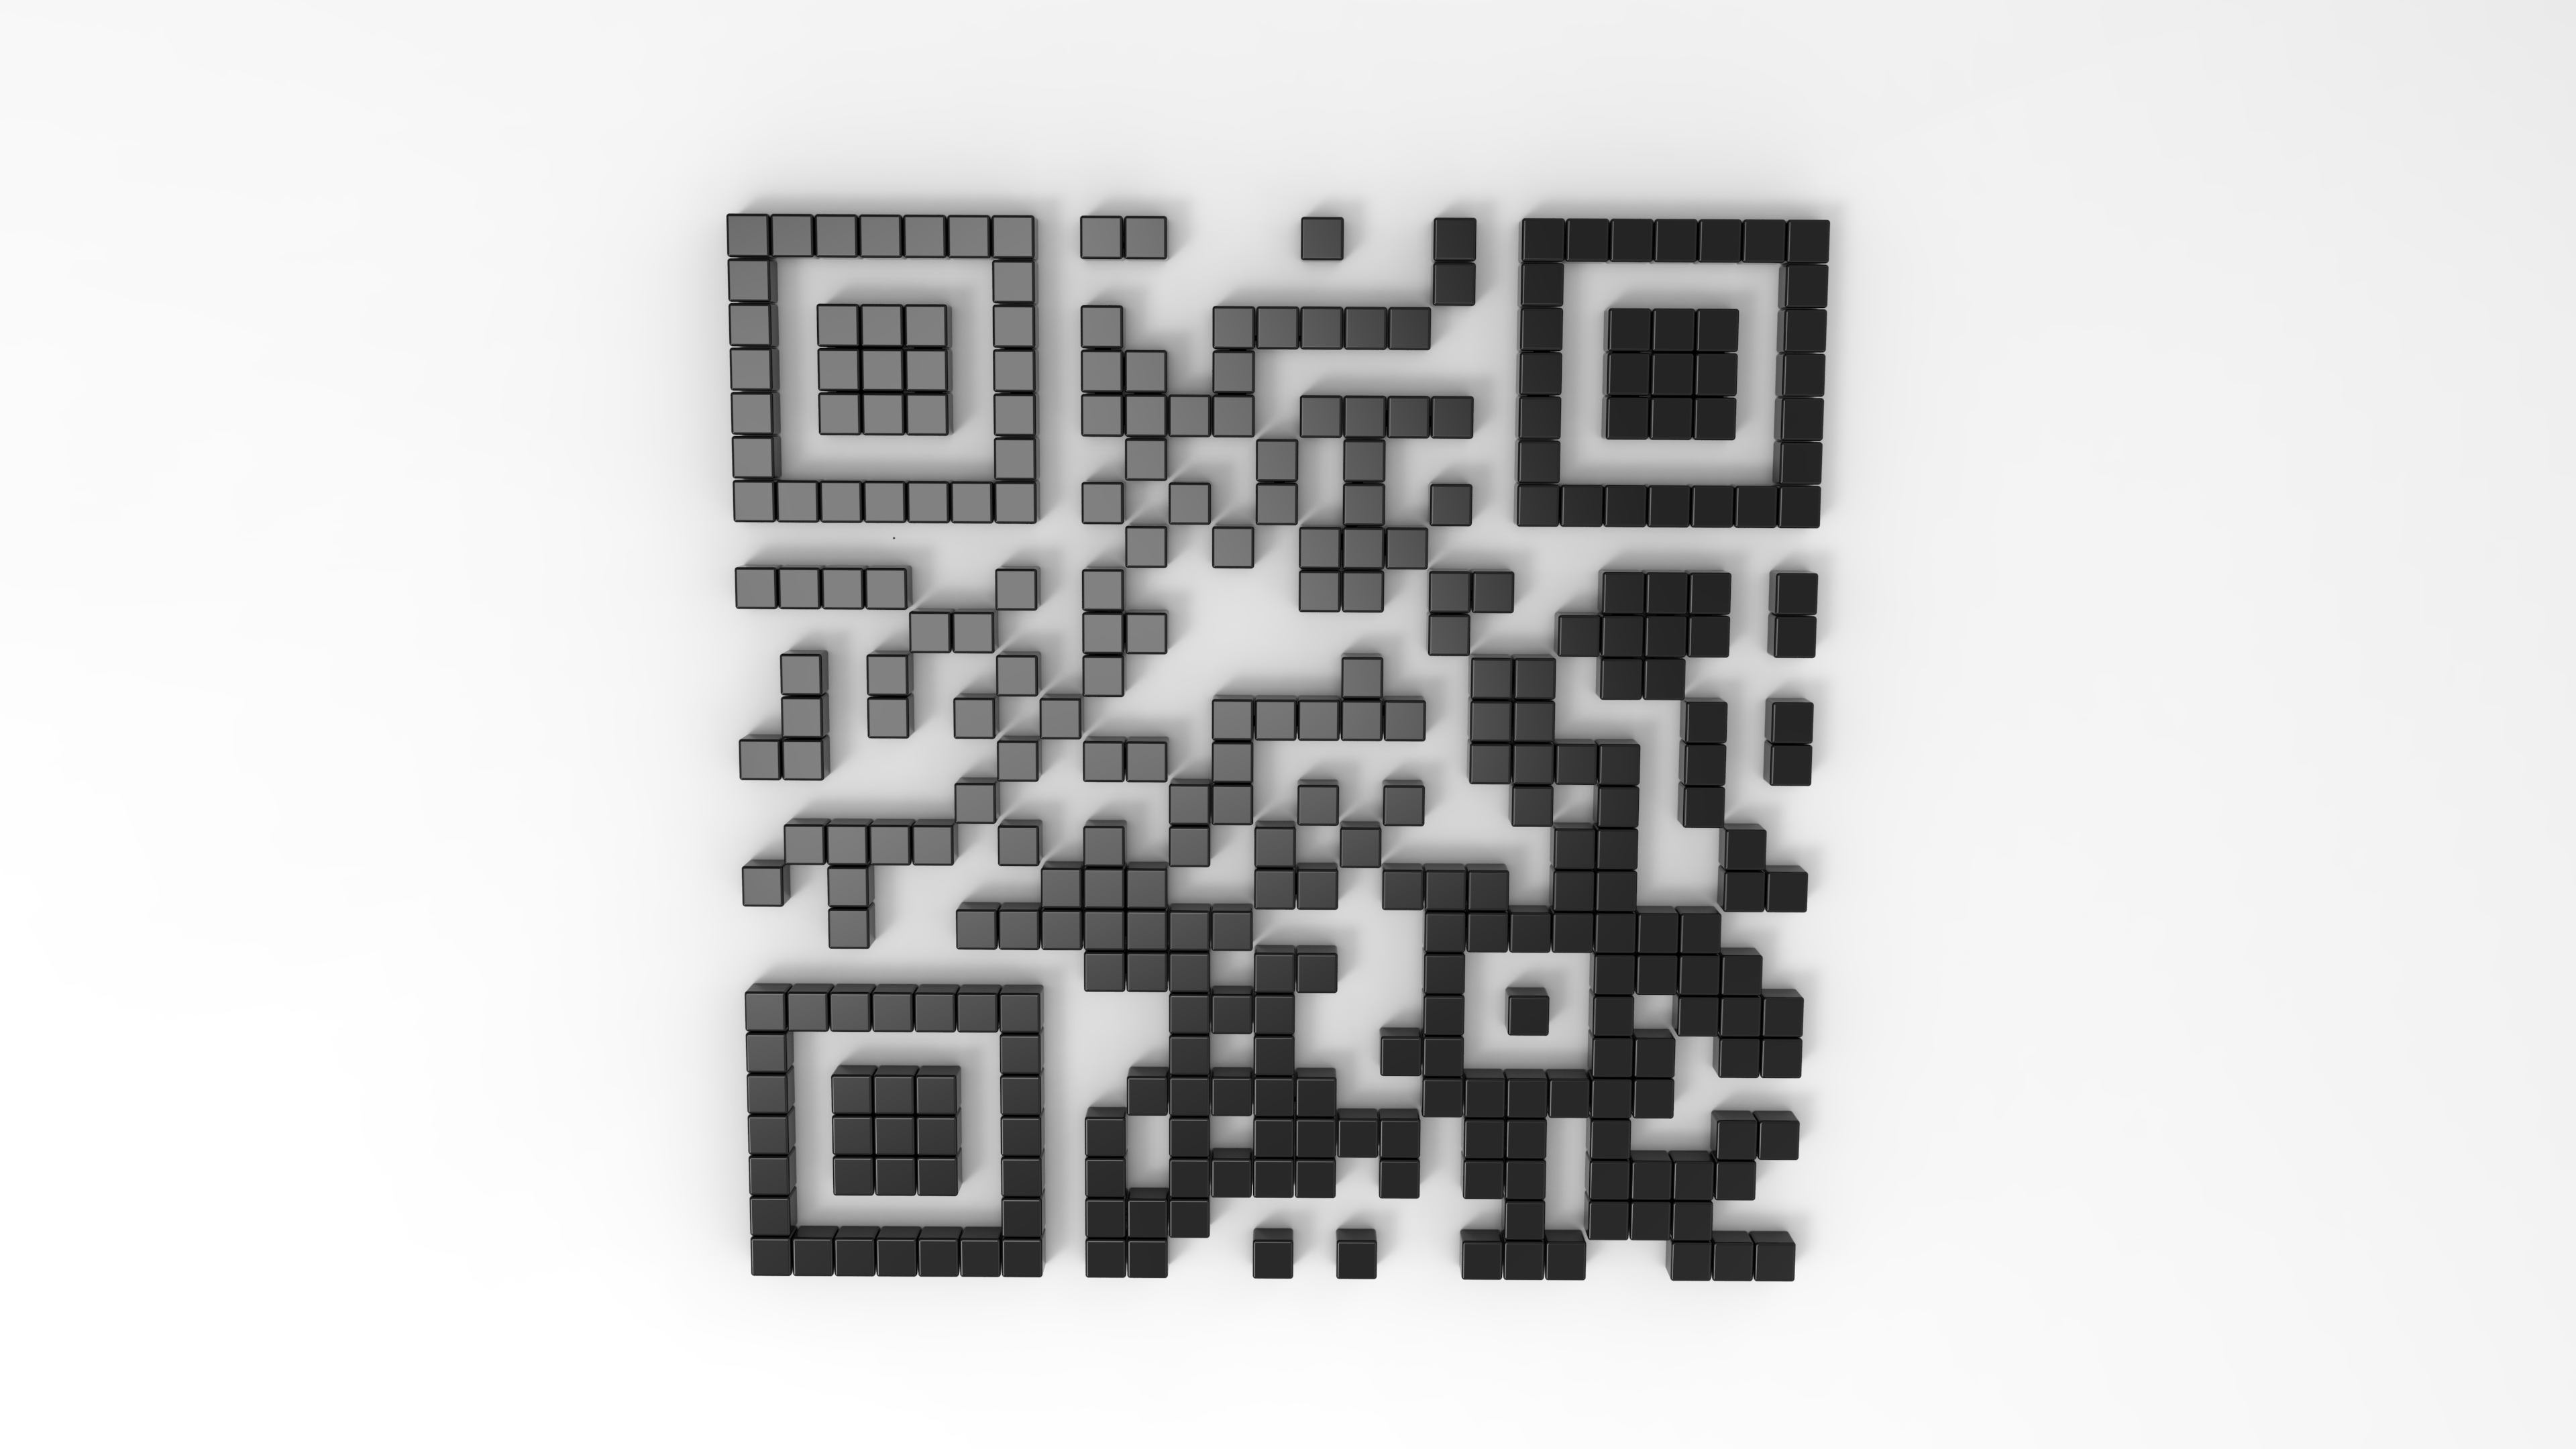 2d qr код. 3д QR код. D&S люстра с19450/2+2 QR код. Распечатка QR кодов. Куб с QR кодом.